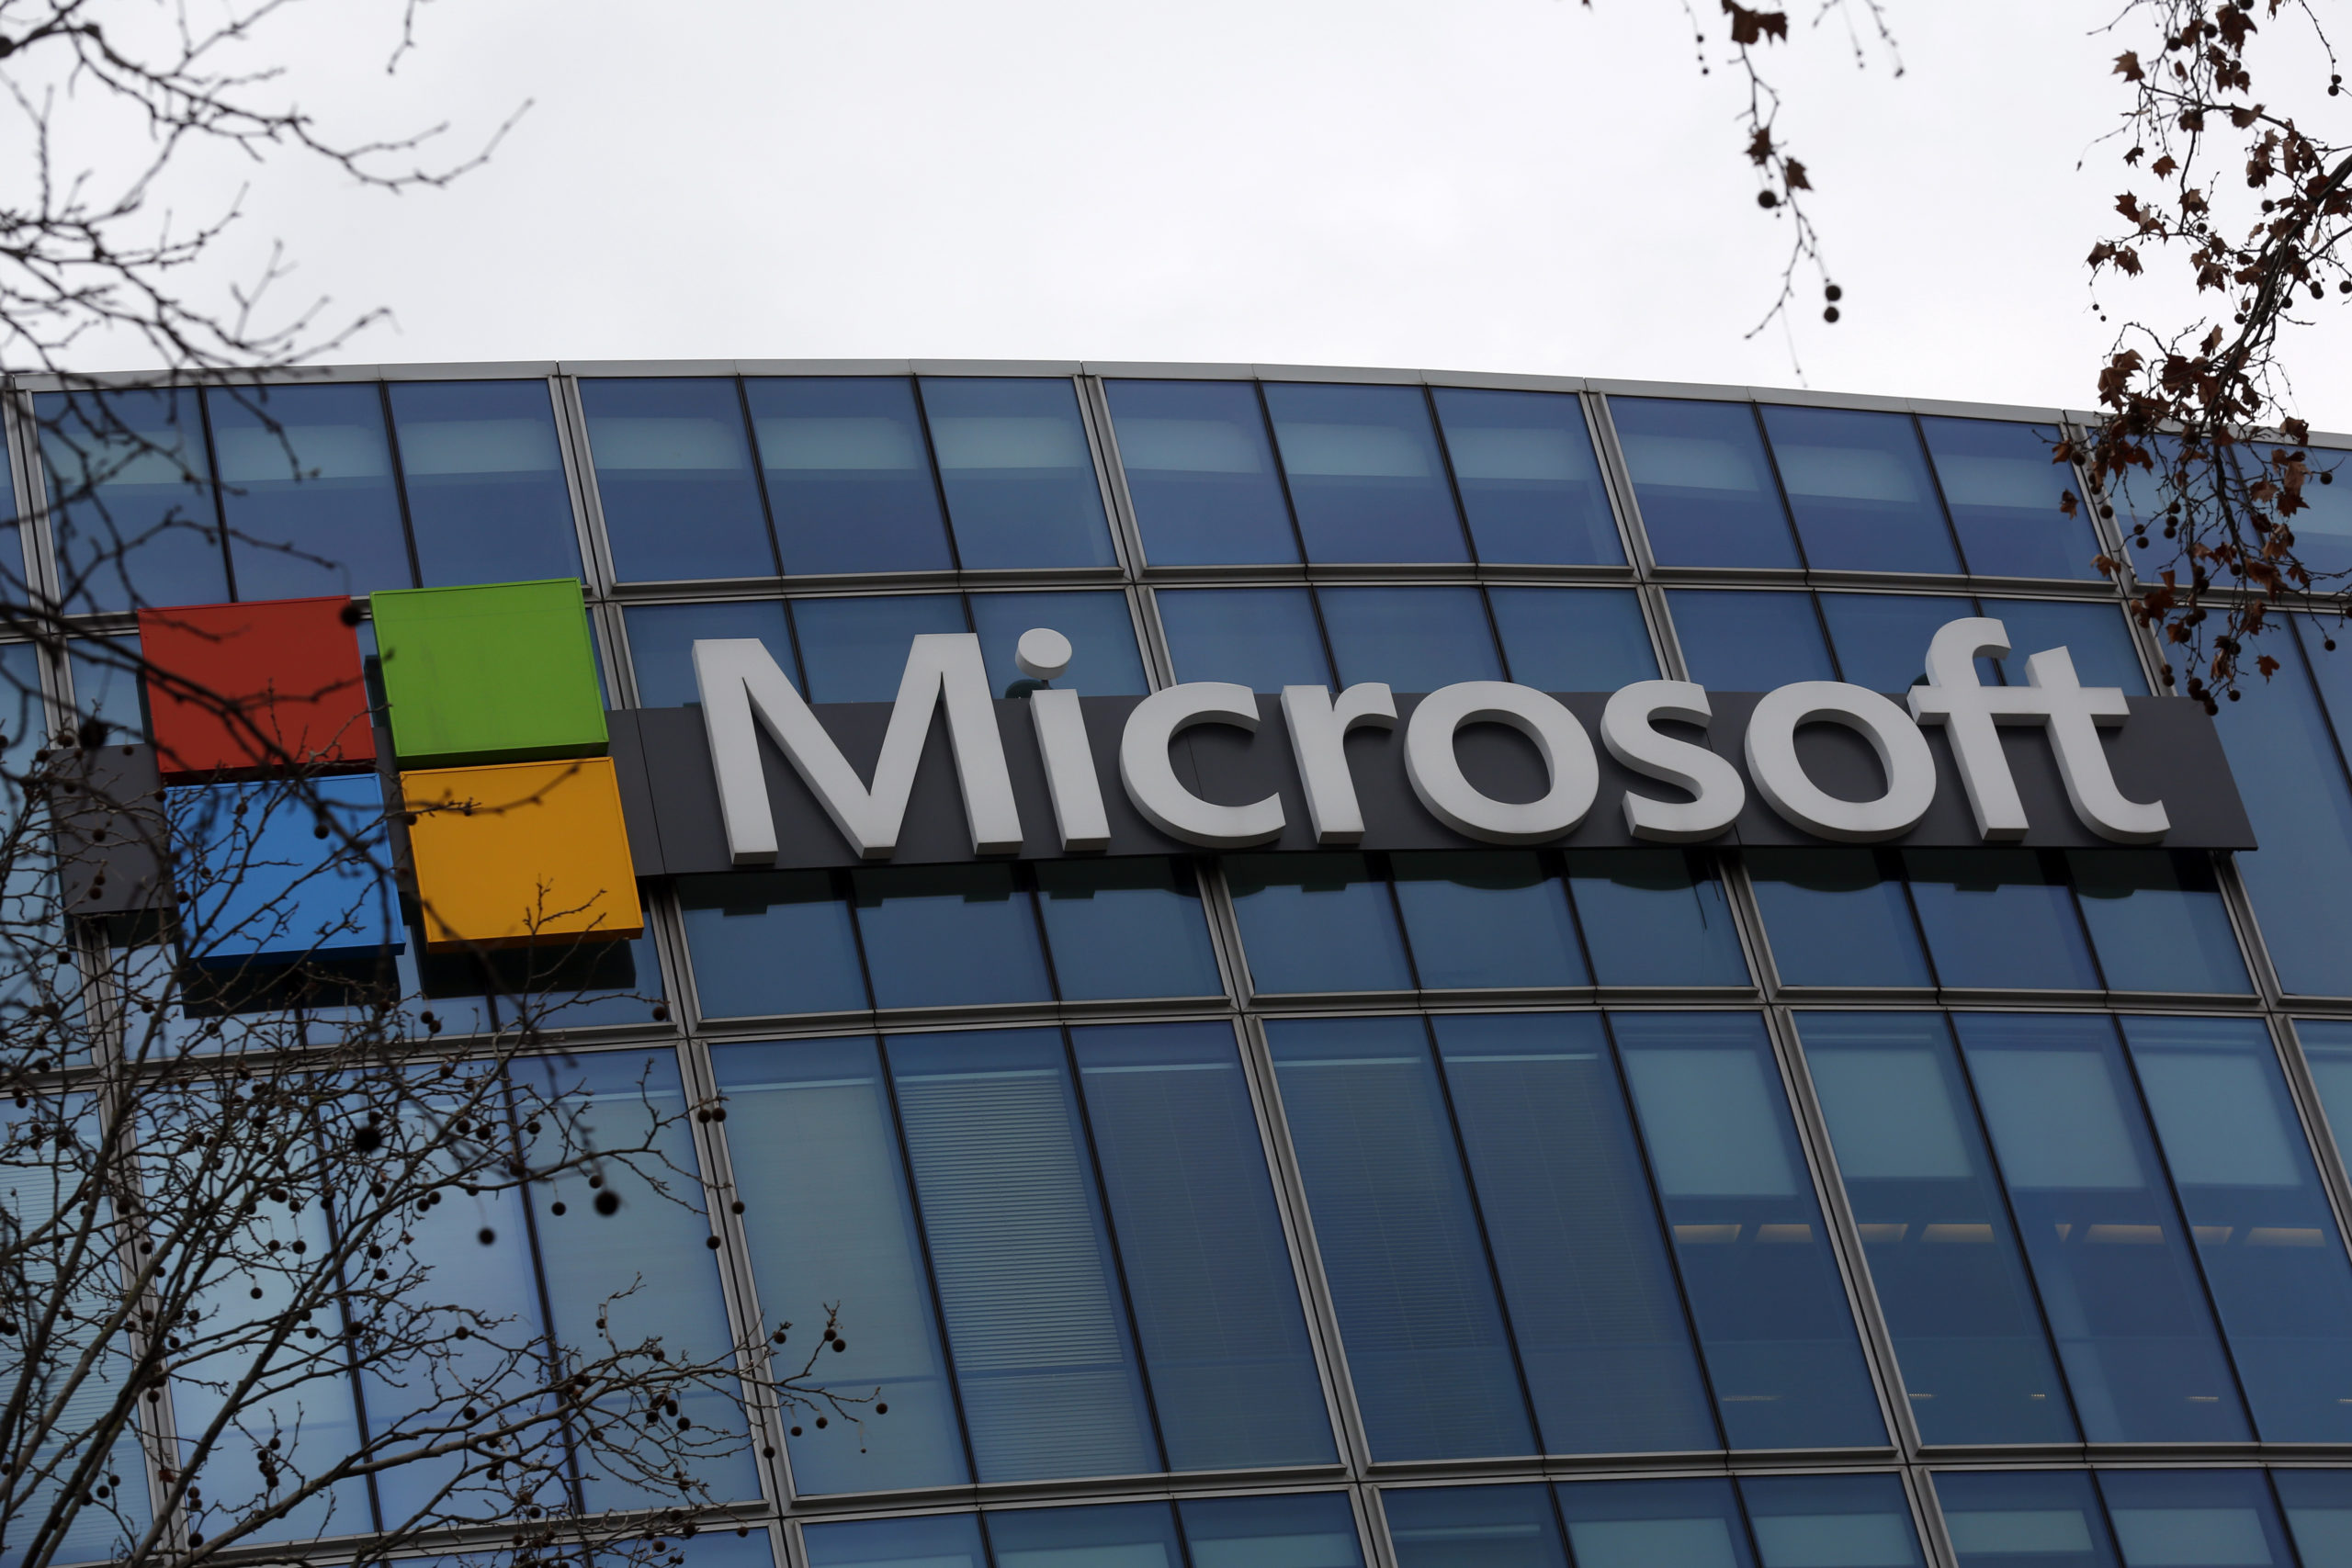 Γερμανία: Επένδυση άνω των 3 δισεκατομμυρίων ευρώ στον τομέα της τεχνητής νοημοσύνης ανακοίνωσε η Microsoft